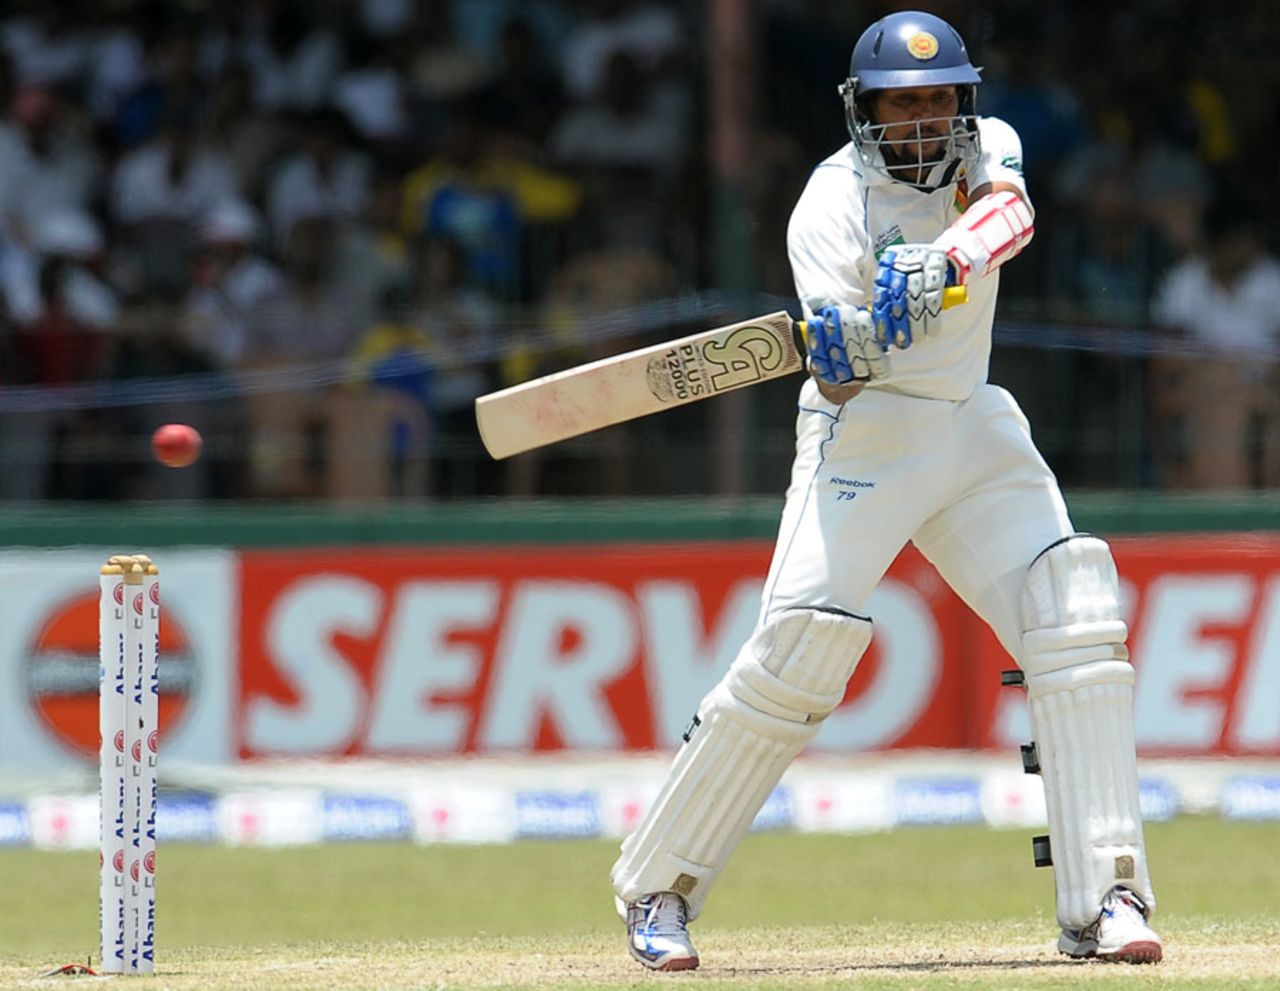 Tillakaratne Dilshan reached his half-century off 70 balls, Sri Lanka v Australia, 3rd Test, SSC, Colombo, 3rd day, September 18, 2011